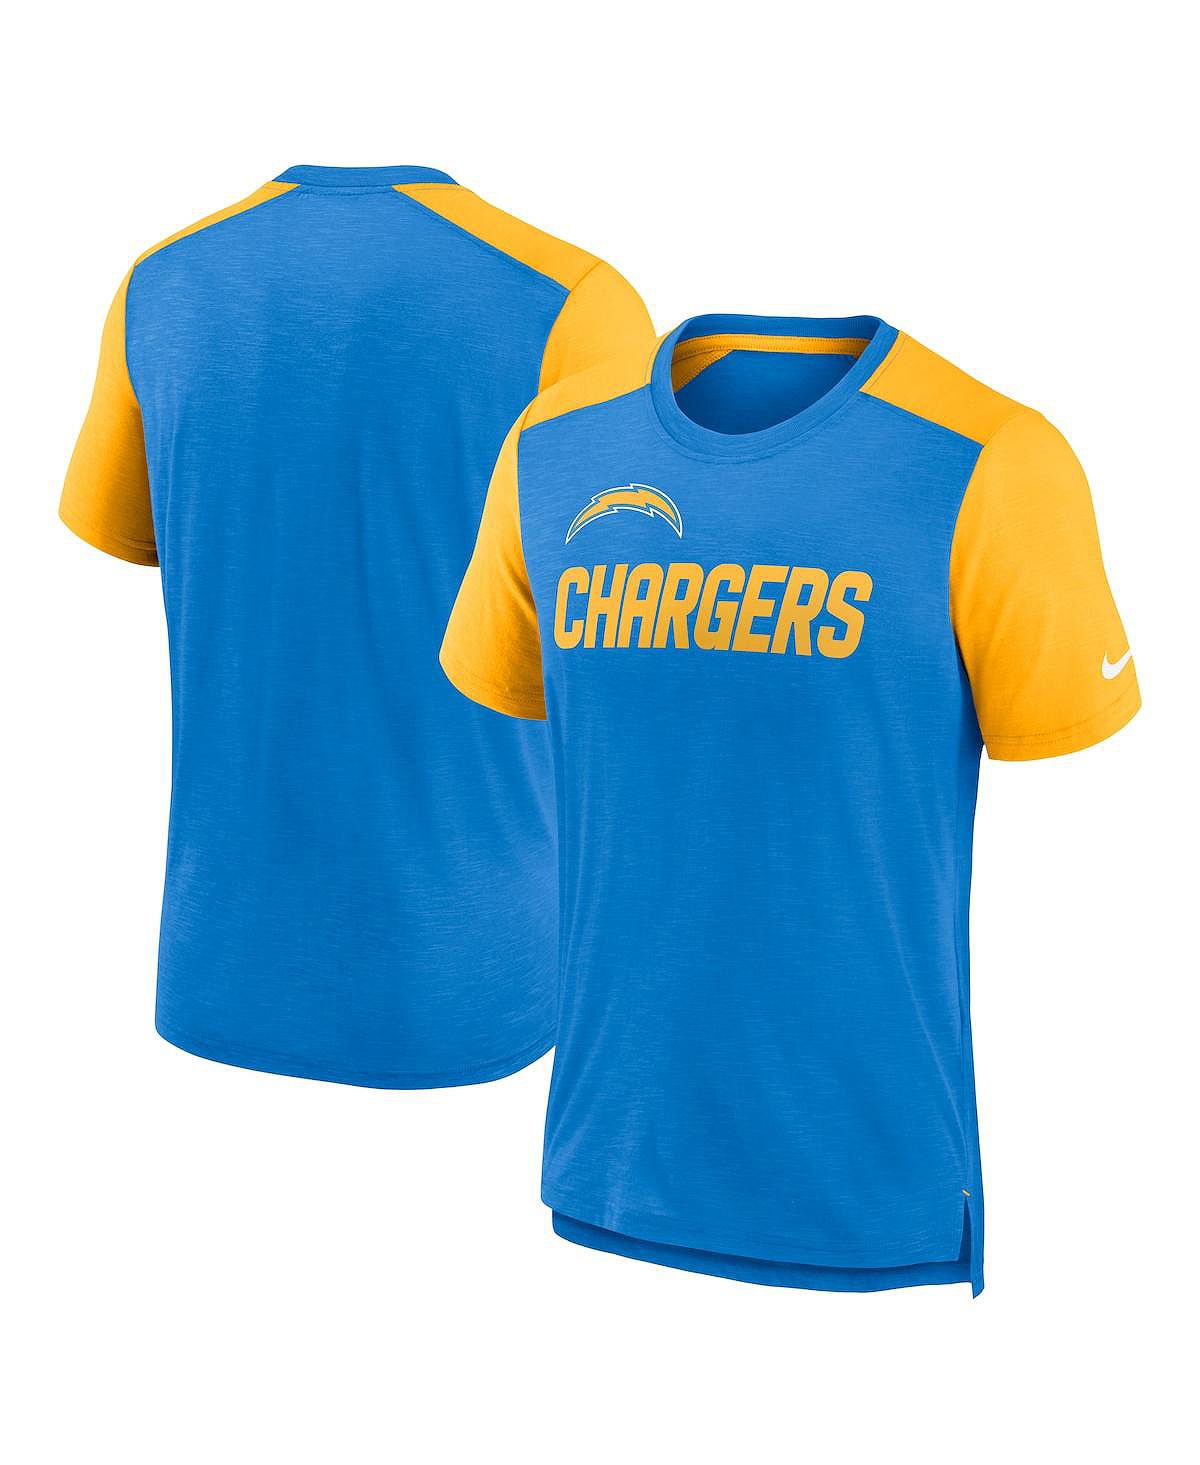 Мужская футболка с цветным блоком «Порошково-синяя и золотая с меланжем» Los Angeles Chargers с названием команды Nike